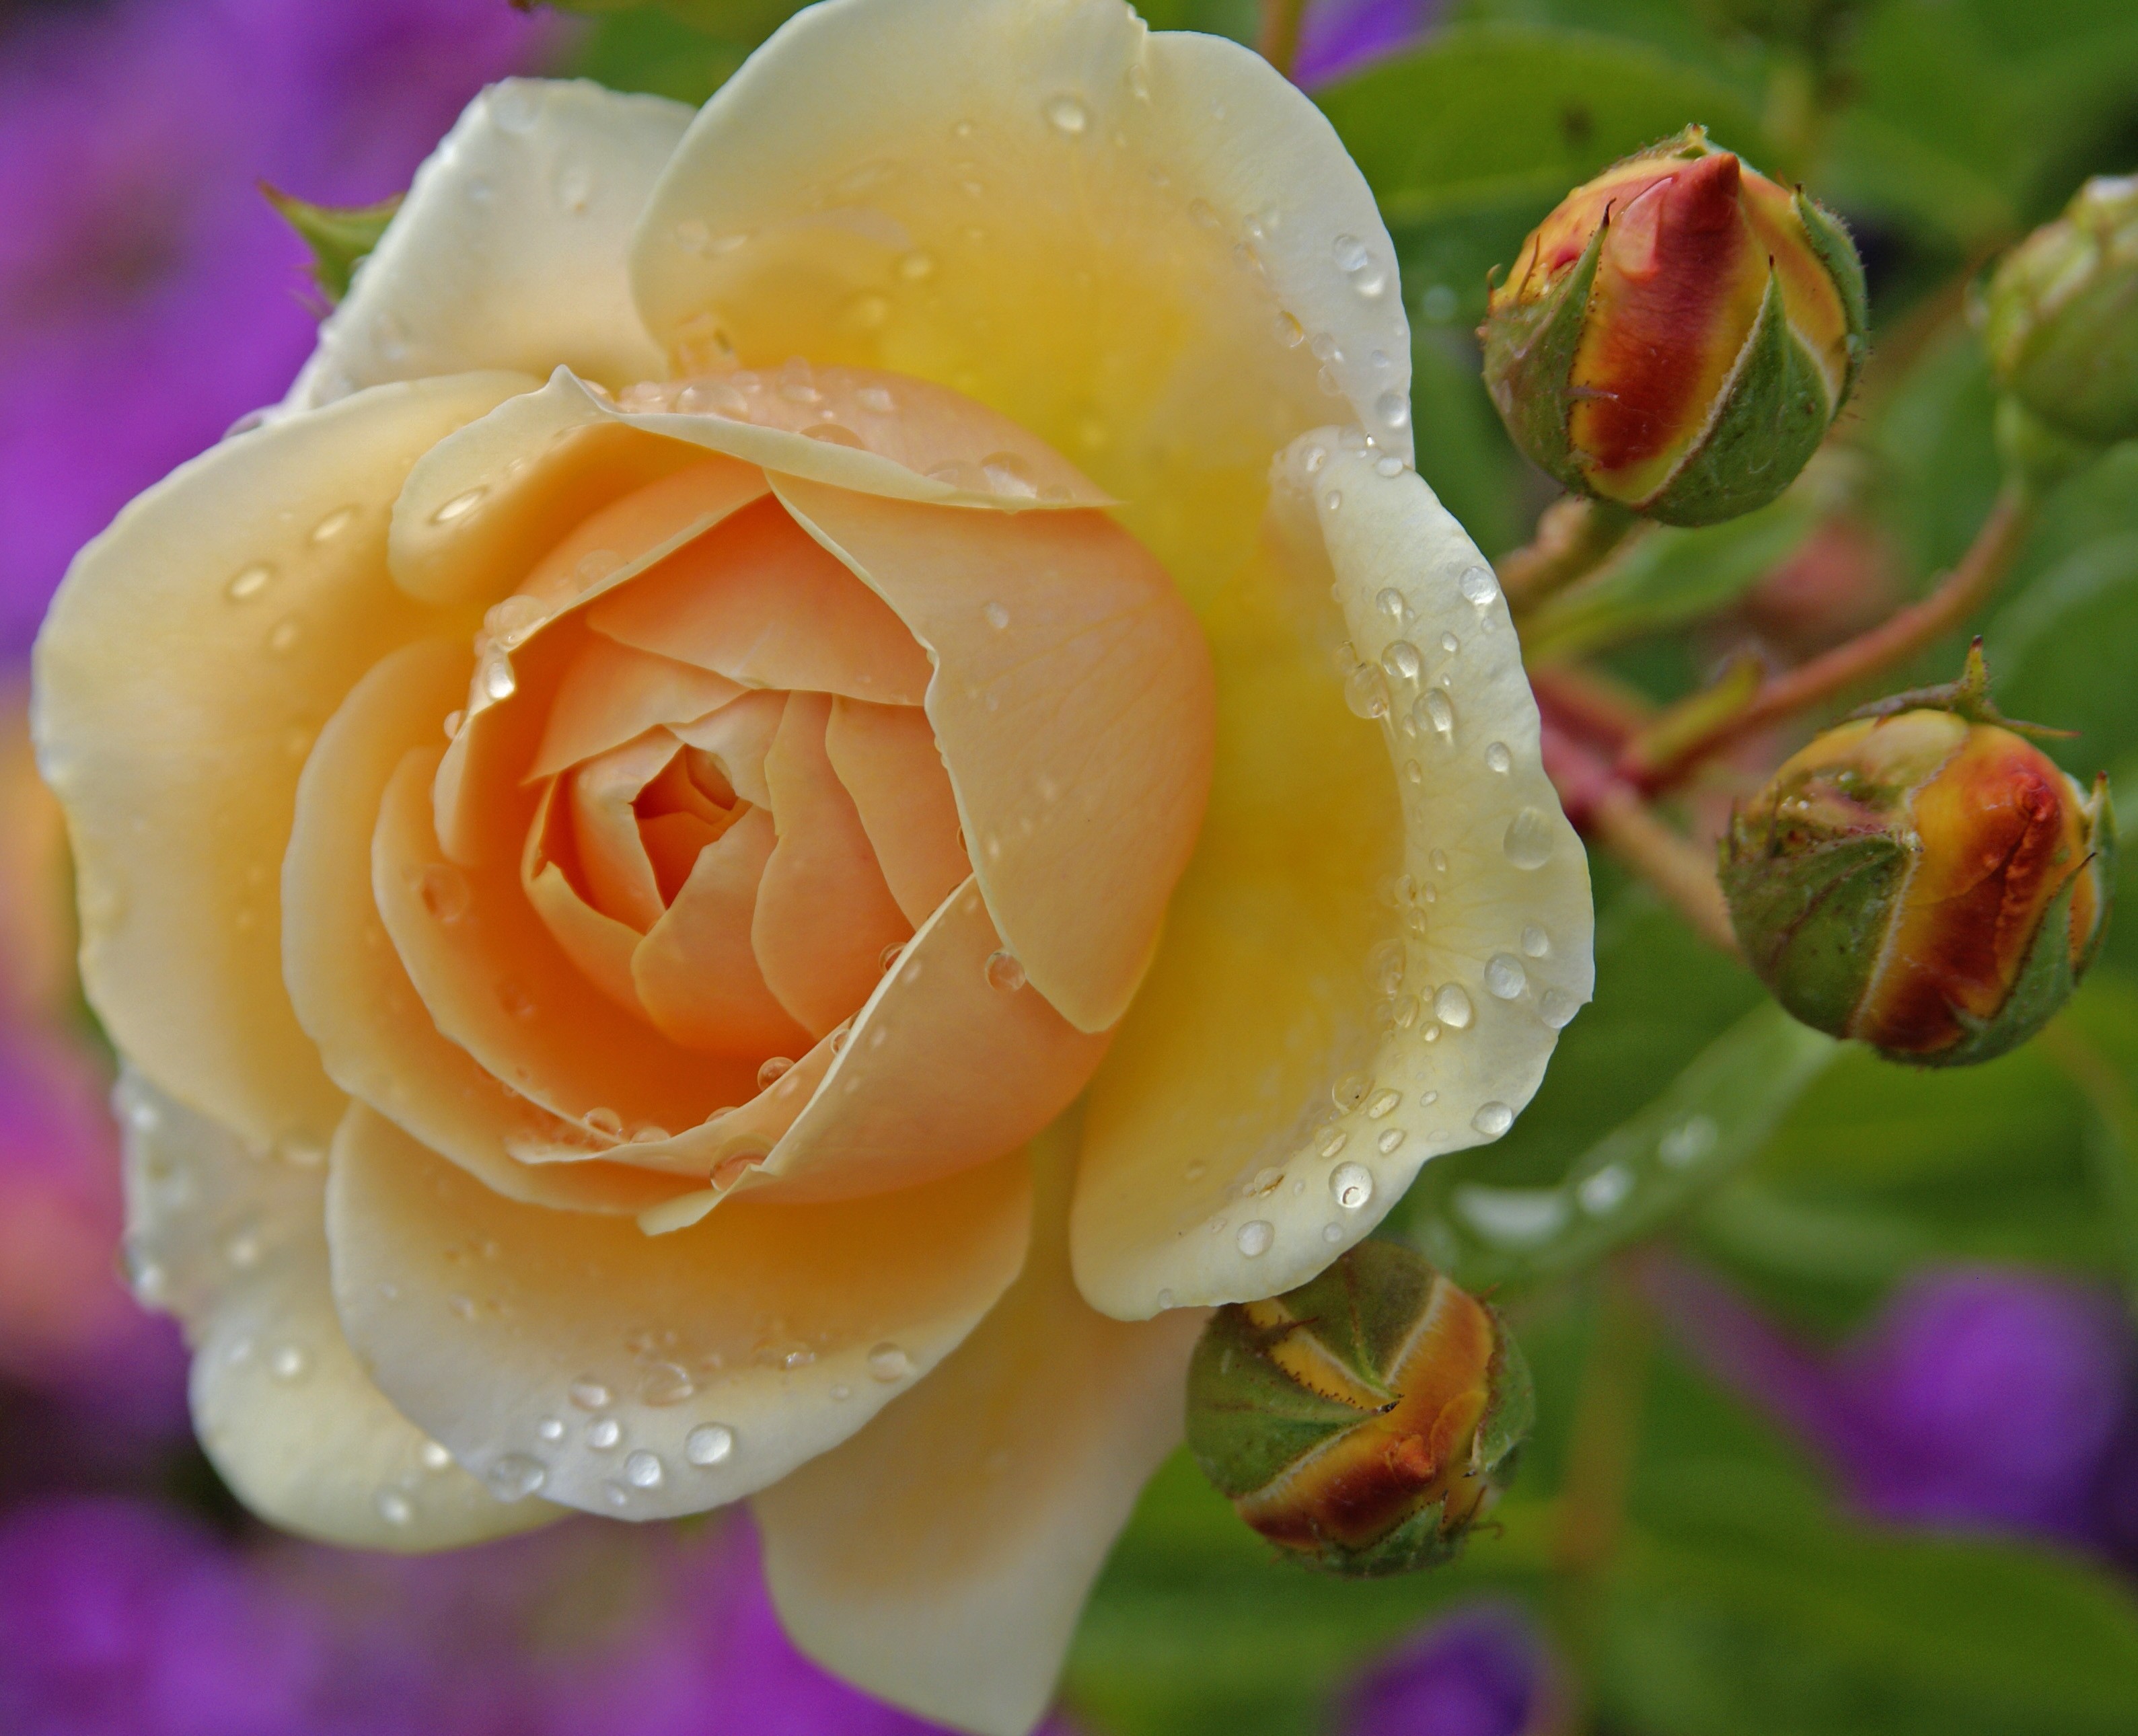 Rose is beautiful. Beautiful Flowers жёлтые розы. Желтые розы на сером фоне.